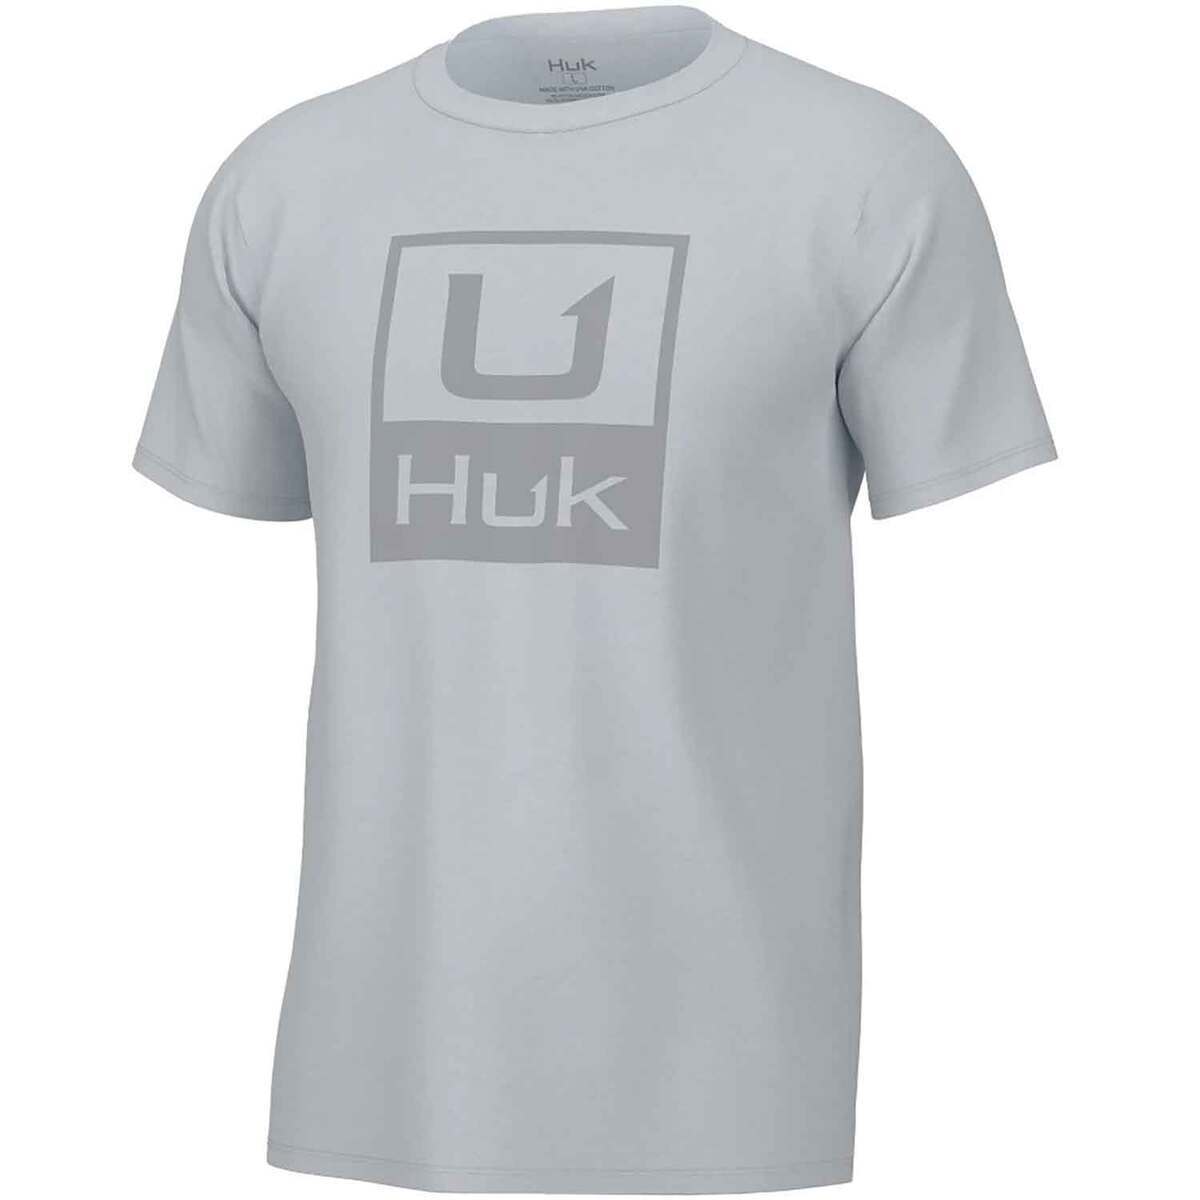 Huk Men's Stacked Logo Tee in Set Sail - M